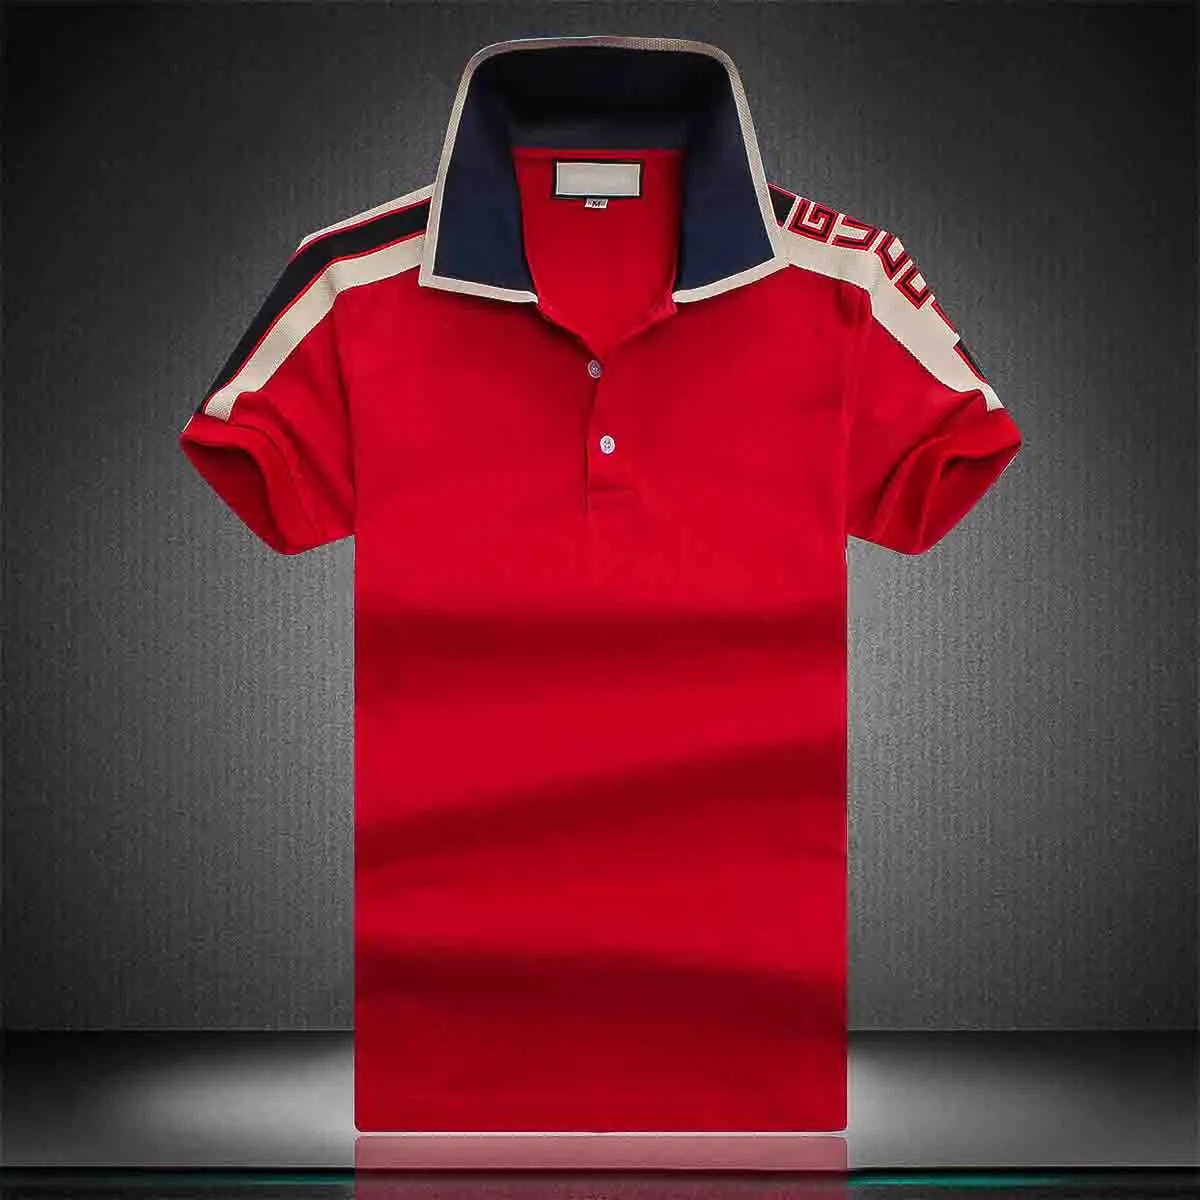 2001 Nowych Mężczyzna Stylista Koszulki Polo Luksusowe Włochy Męskie Markowe Ubrania Z Krótkim Rękawem Moda Mężczyzna Lato T Shirt Asian Rozmiar M-3XL KK33